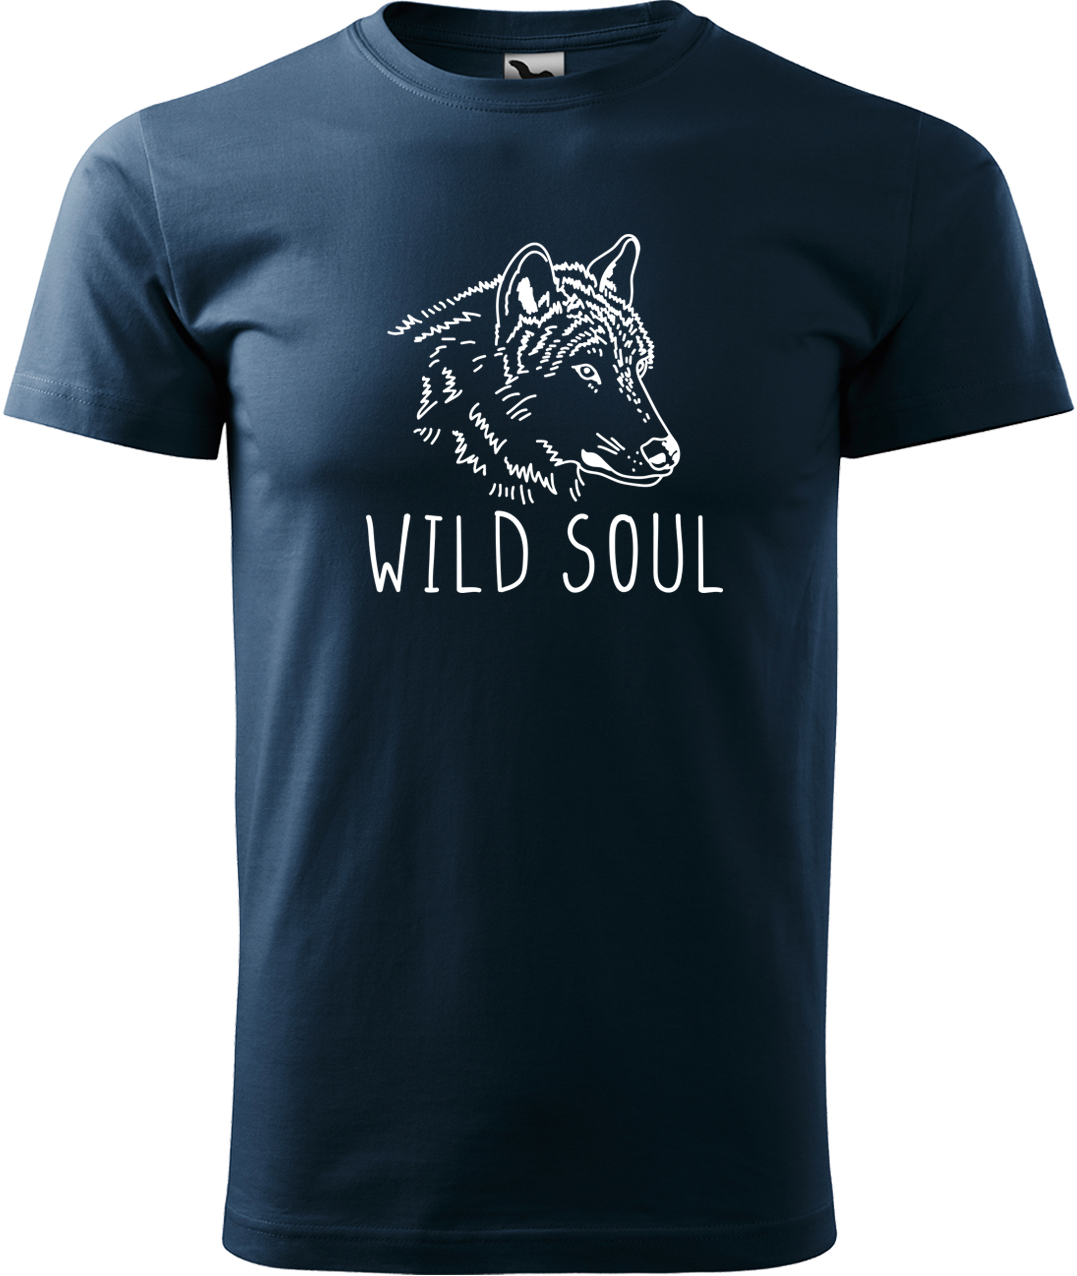 Pánské tričko s vlkem - Wild soul Velikost: 4XL, Barva: Námořní modrá (02), Střih: pánský